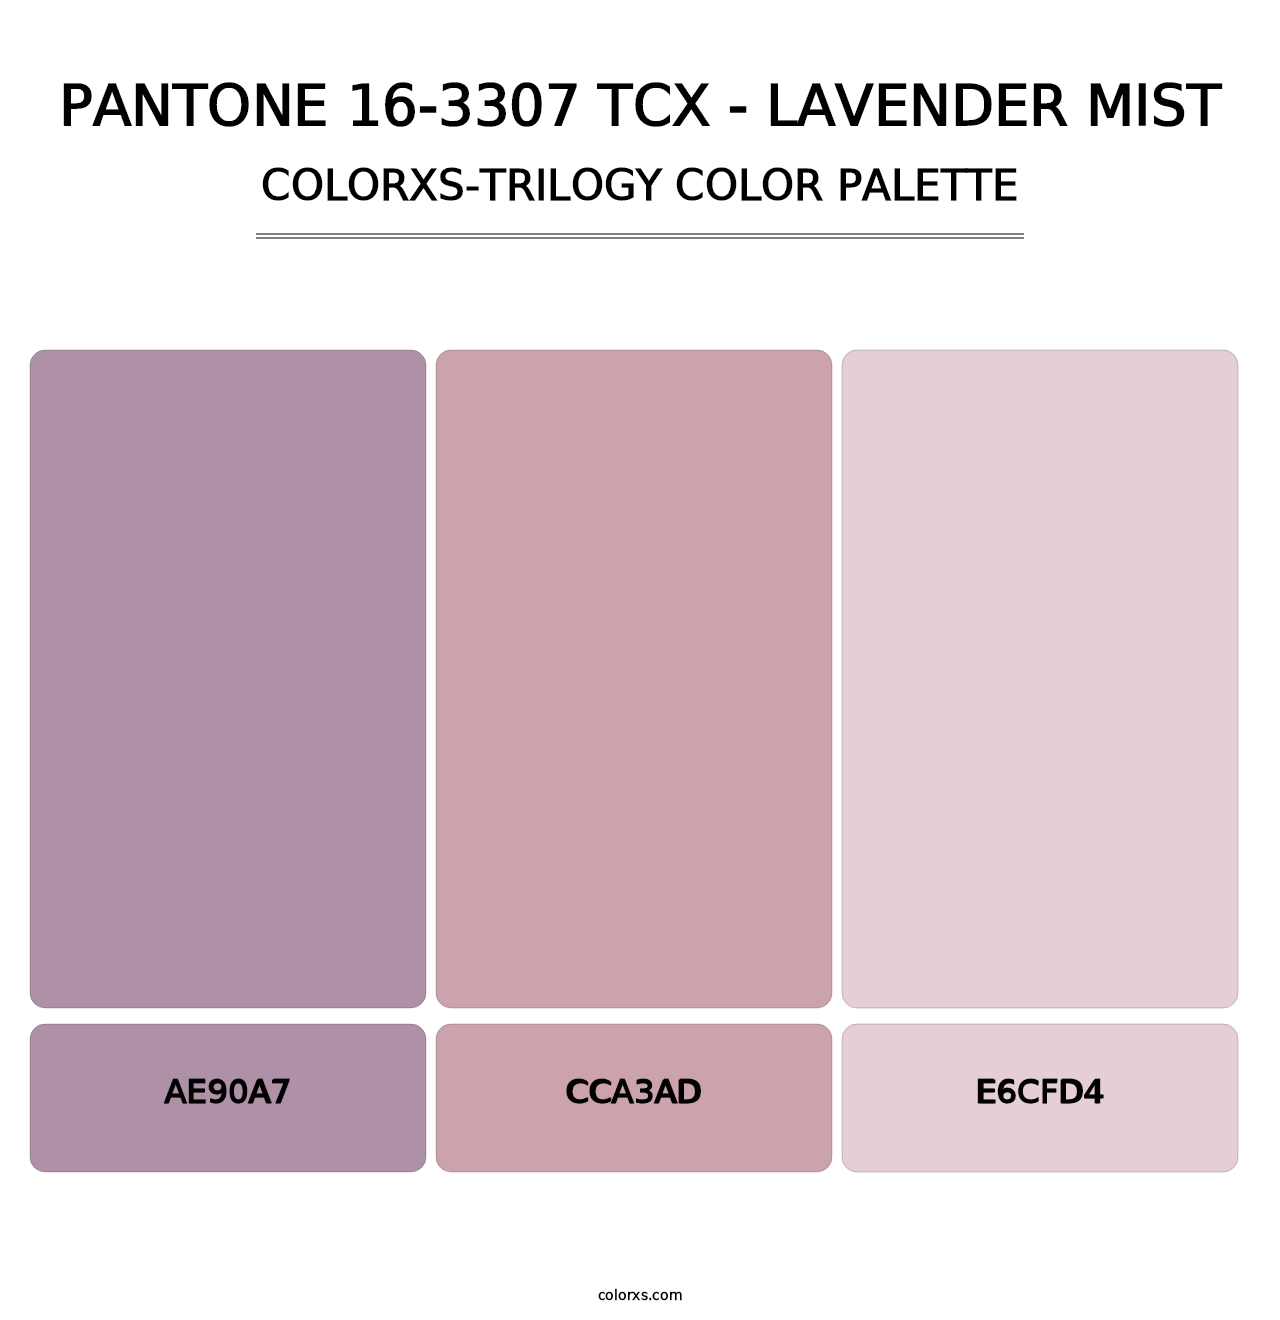 PANTONE 16-3307 TCX - Lavender Mist - Colorxs Trilogy Palette